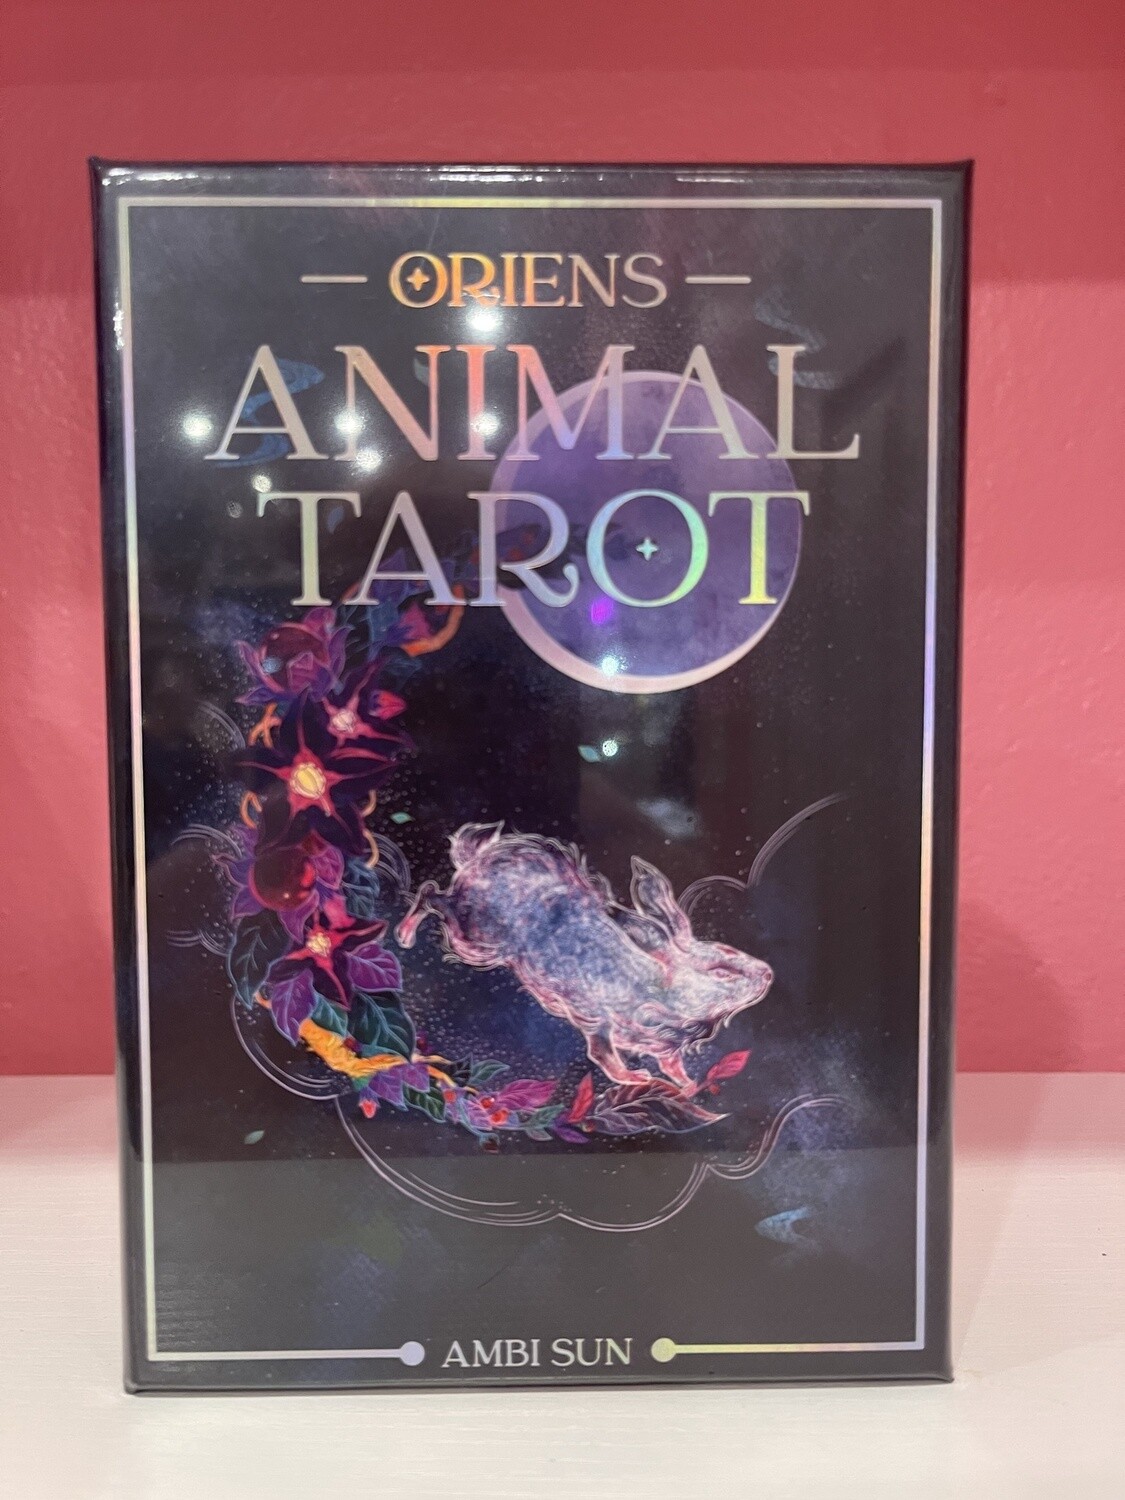 ORIEN'S ANIMAL TAROT